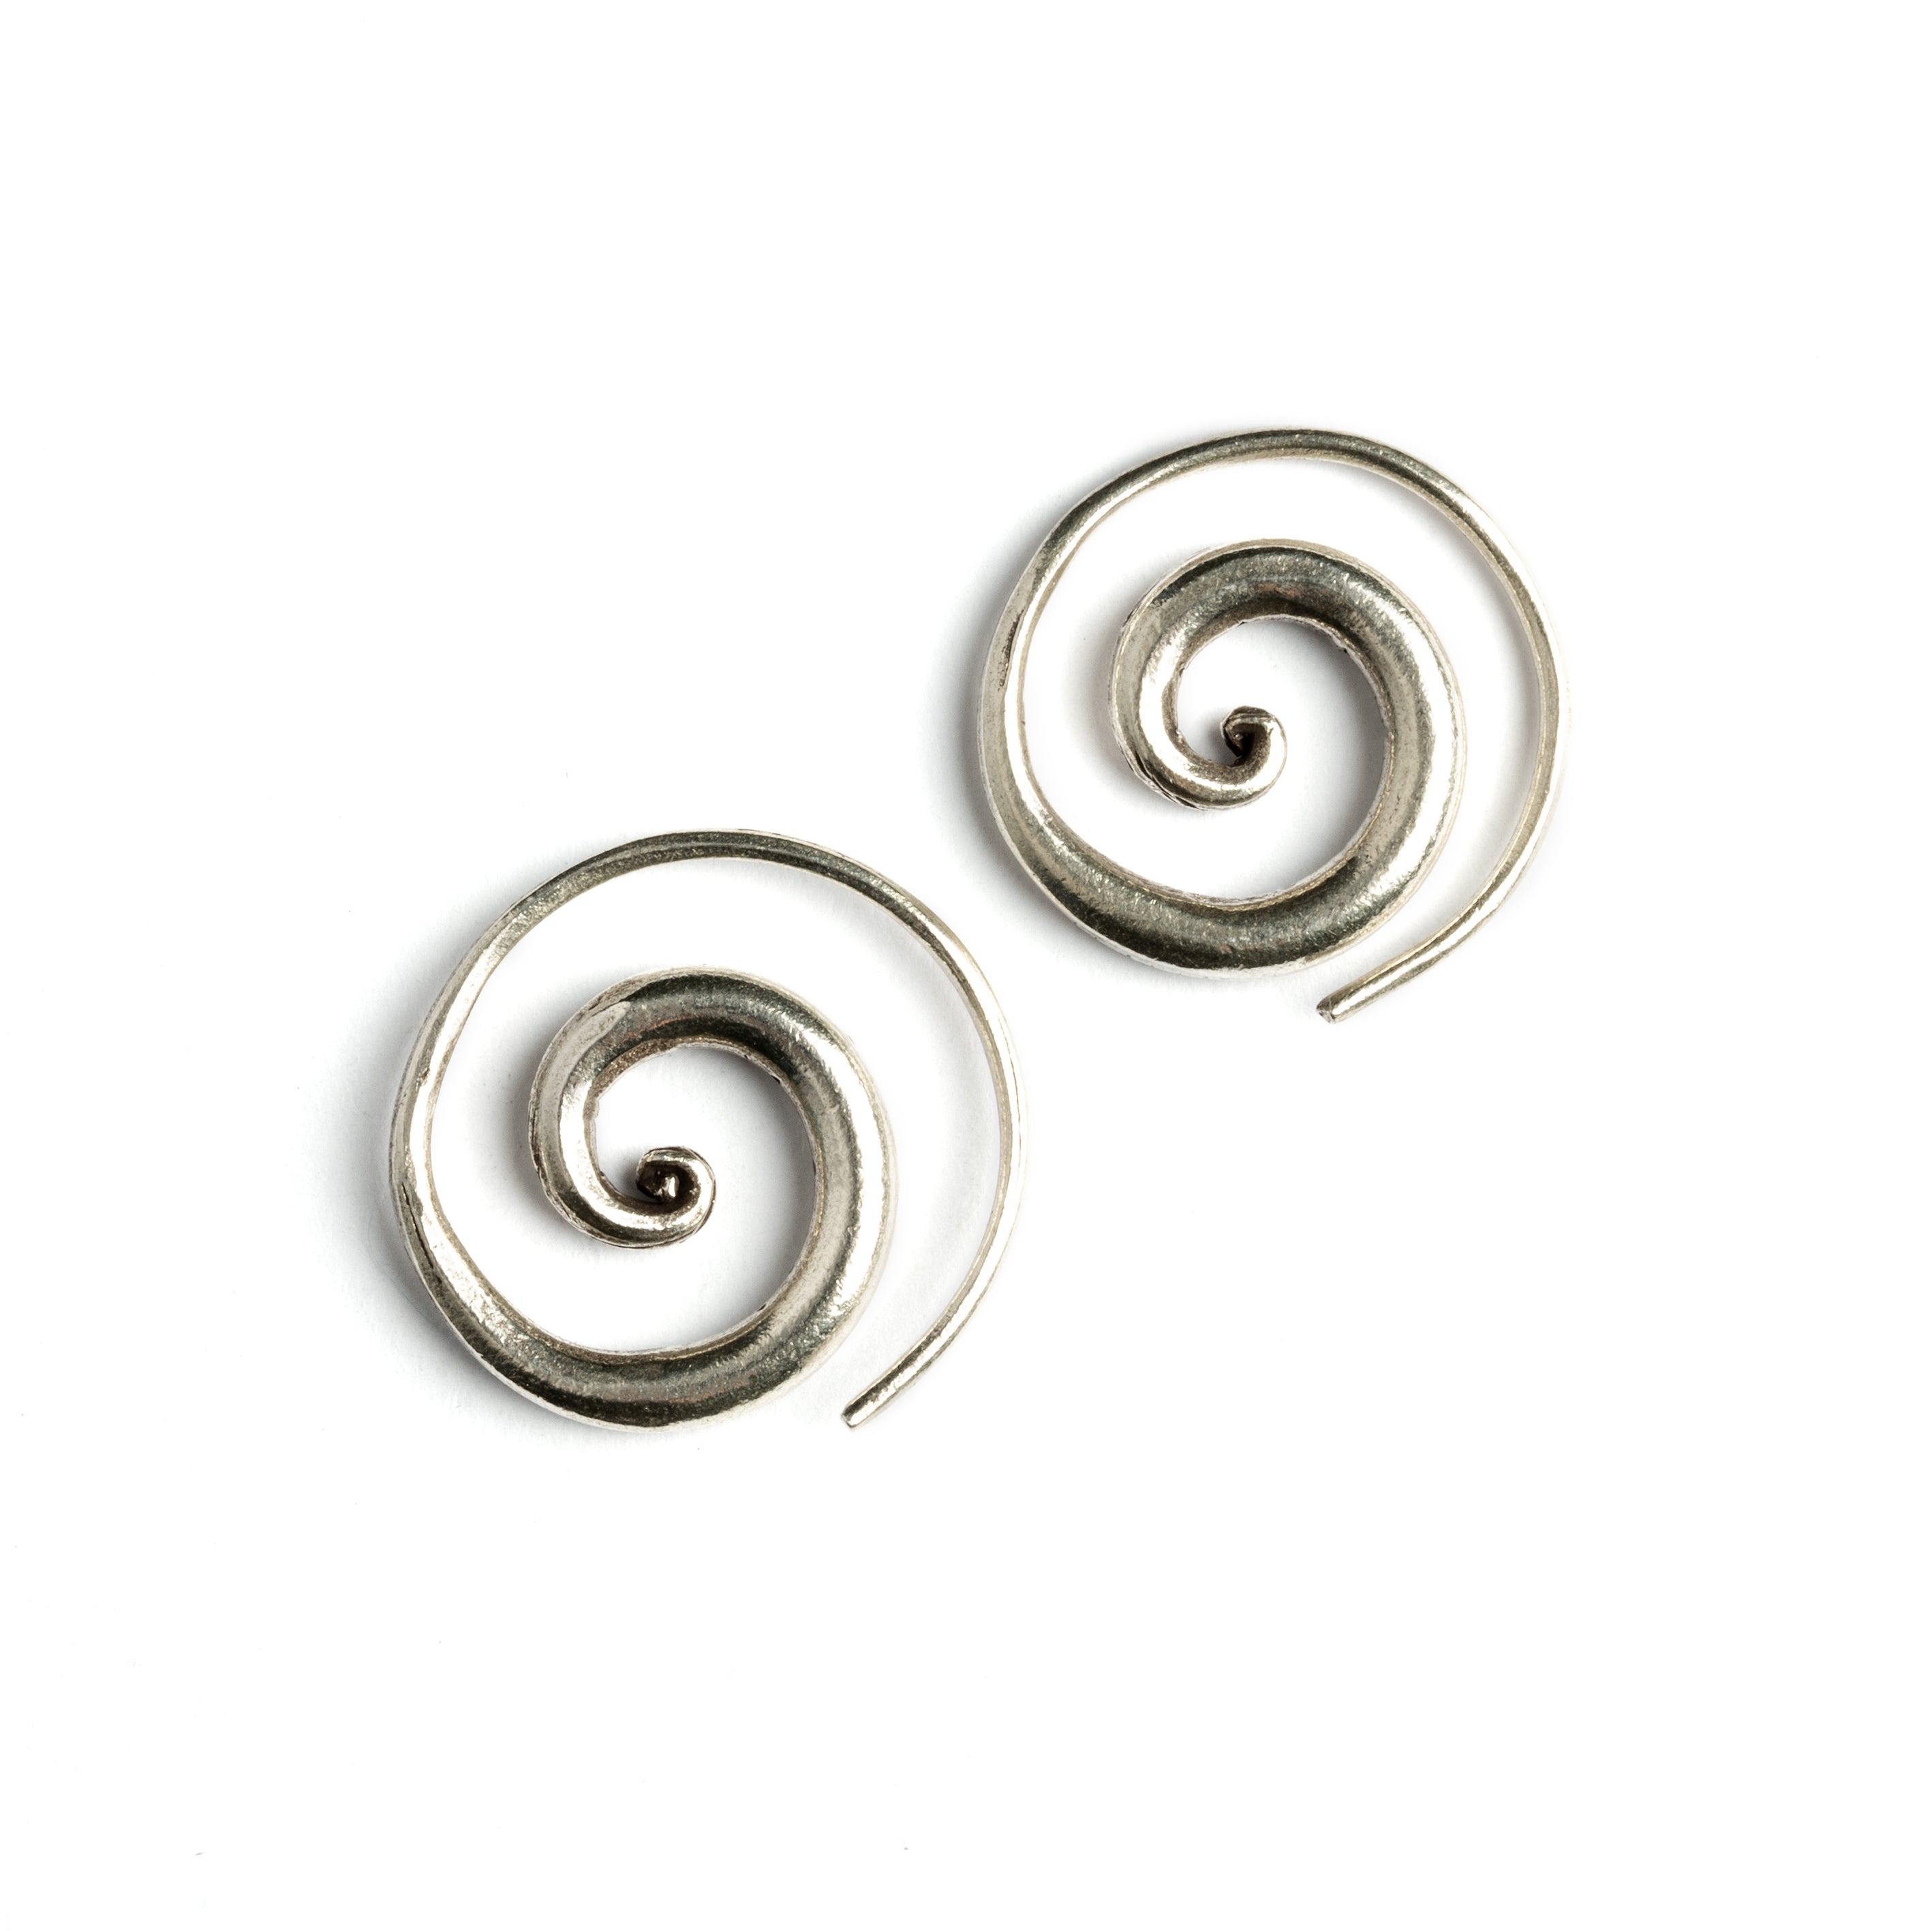 Gold Ear Wire - Spiral Teardrop Shape in 24K Gold Plate